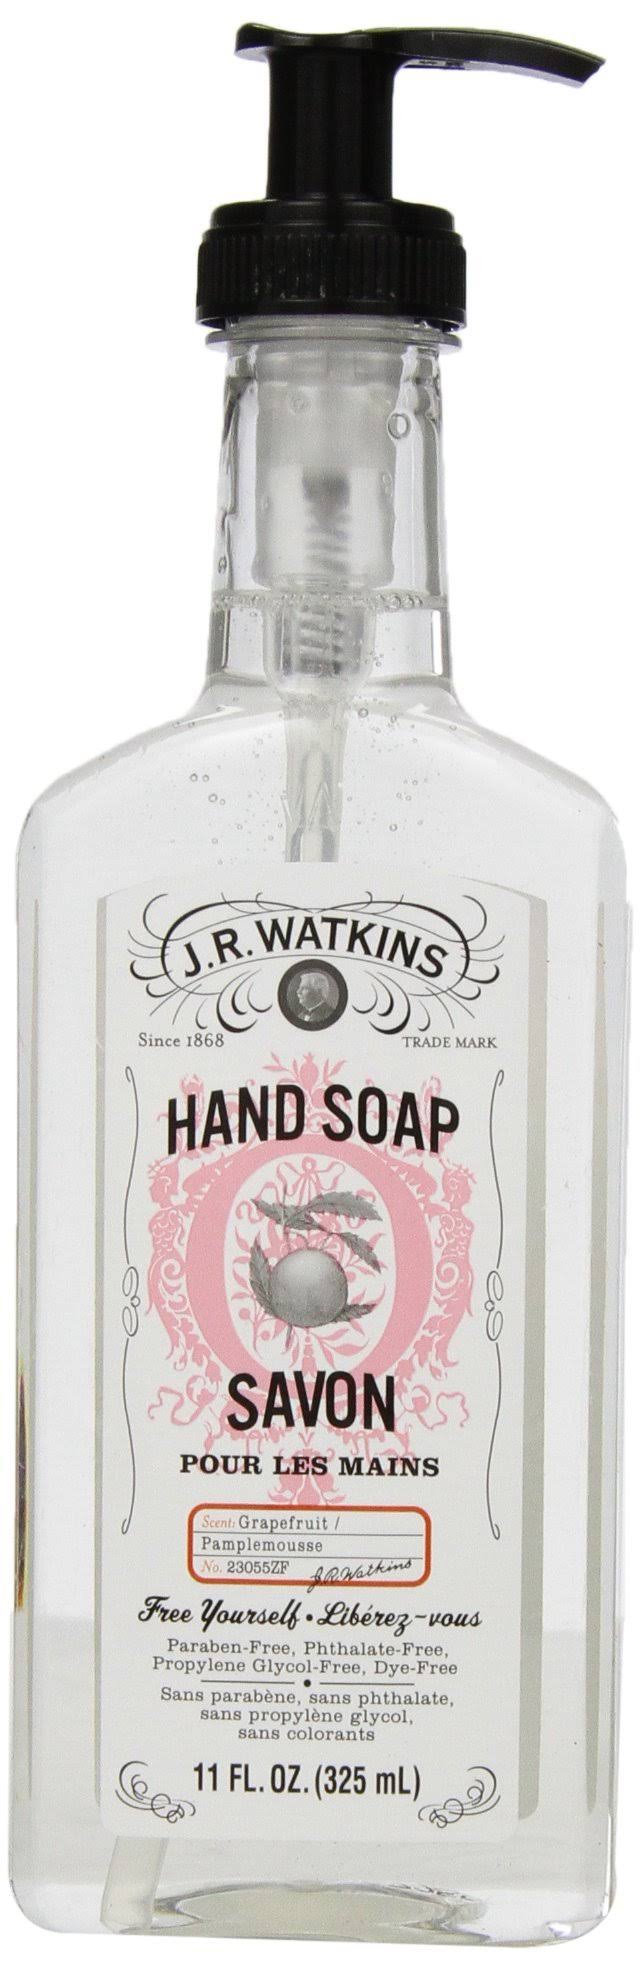 J.R. Watkins Natural Liquid Hand Soap - Grapefruit, 11oz